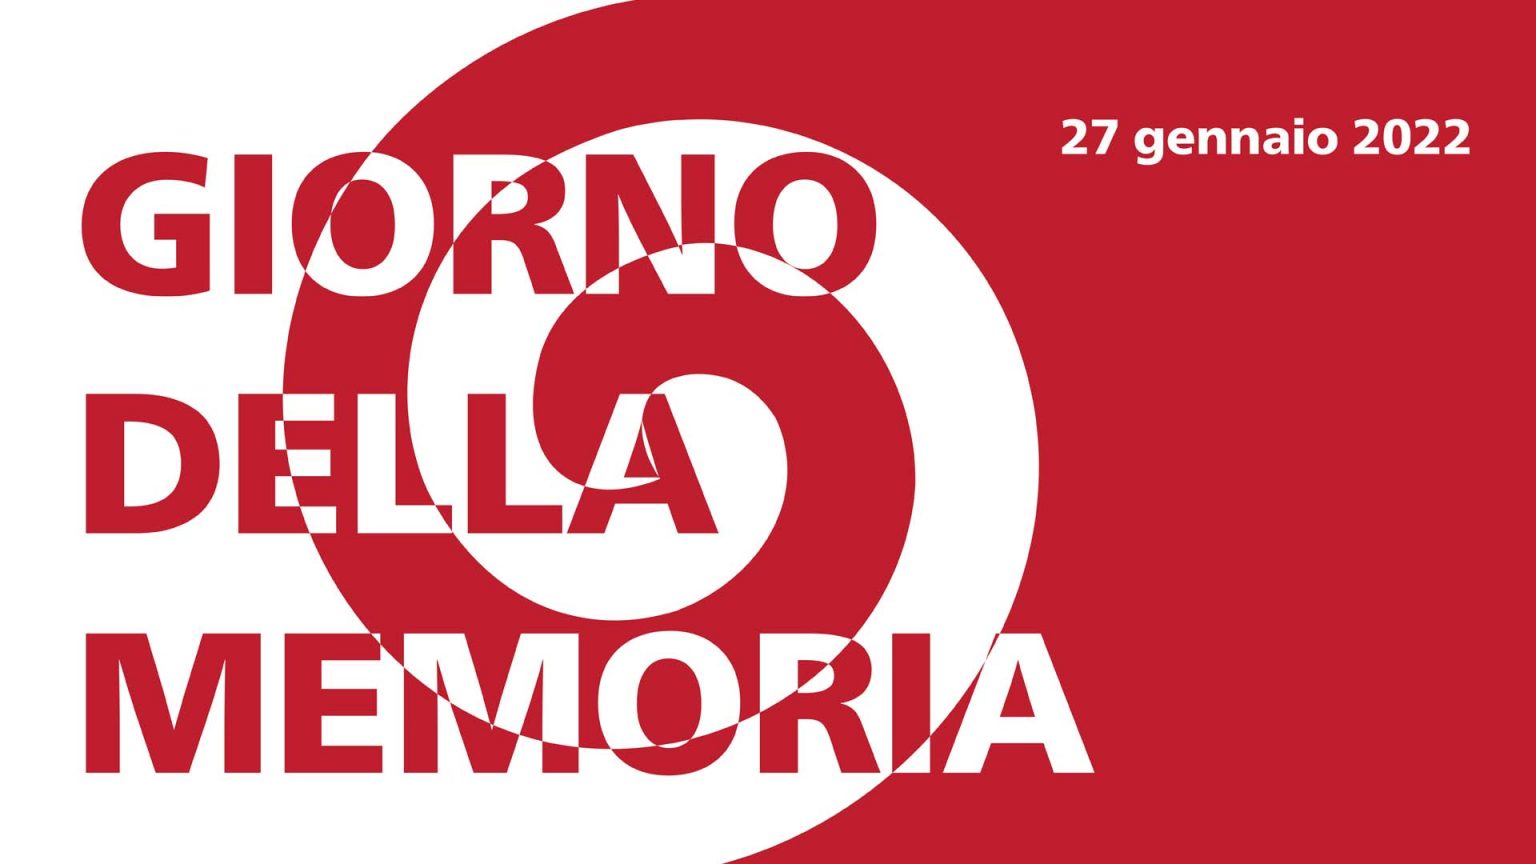 Torino, spettacoli, dirette radio, mostre, letture per il Giorno della Memoria